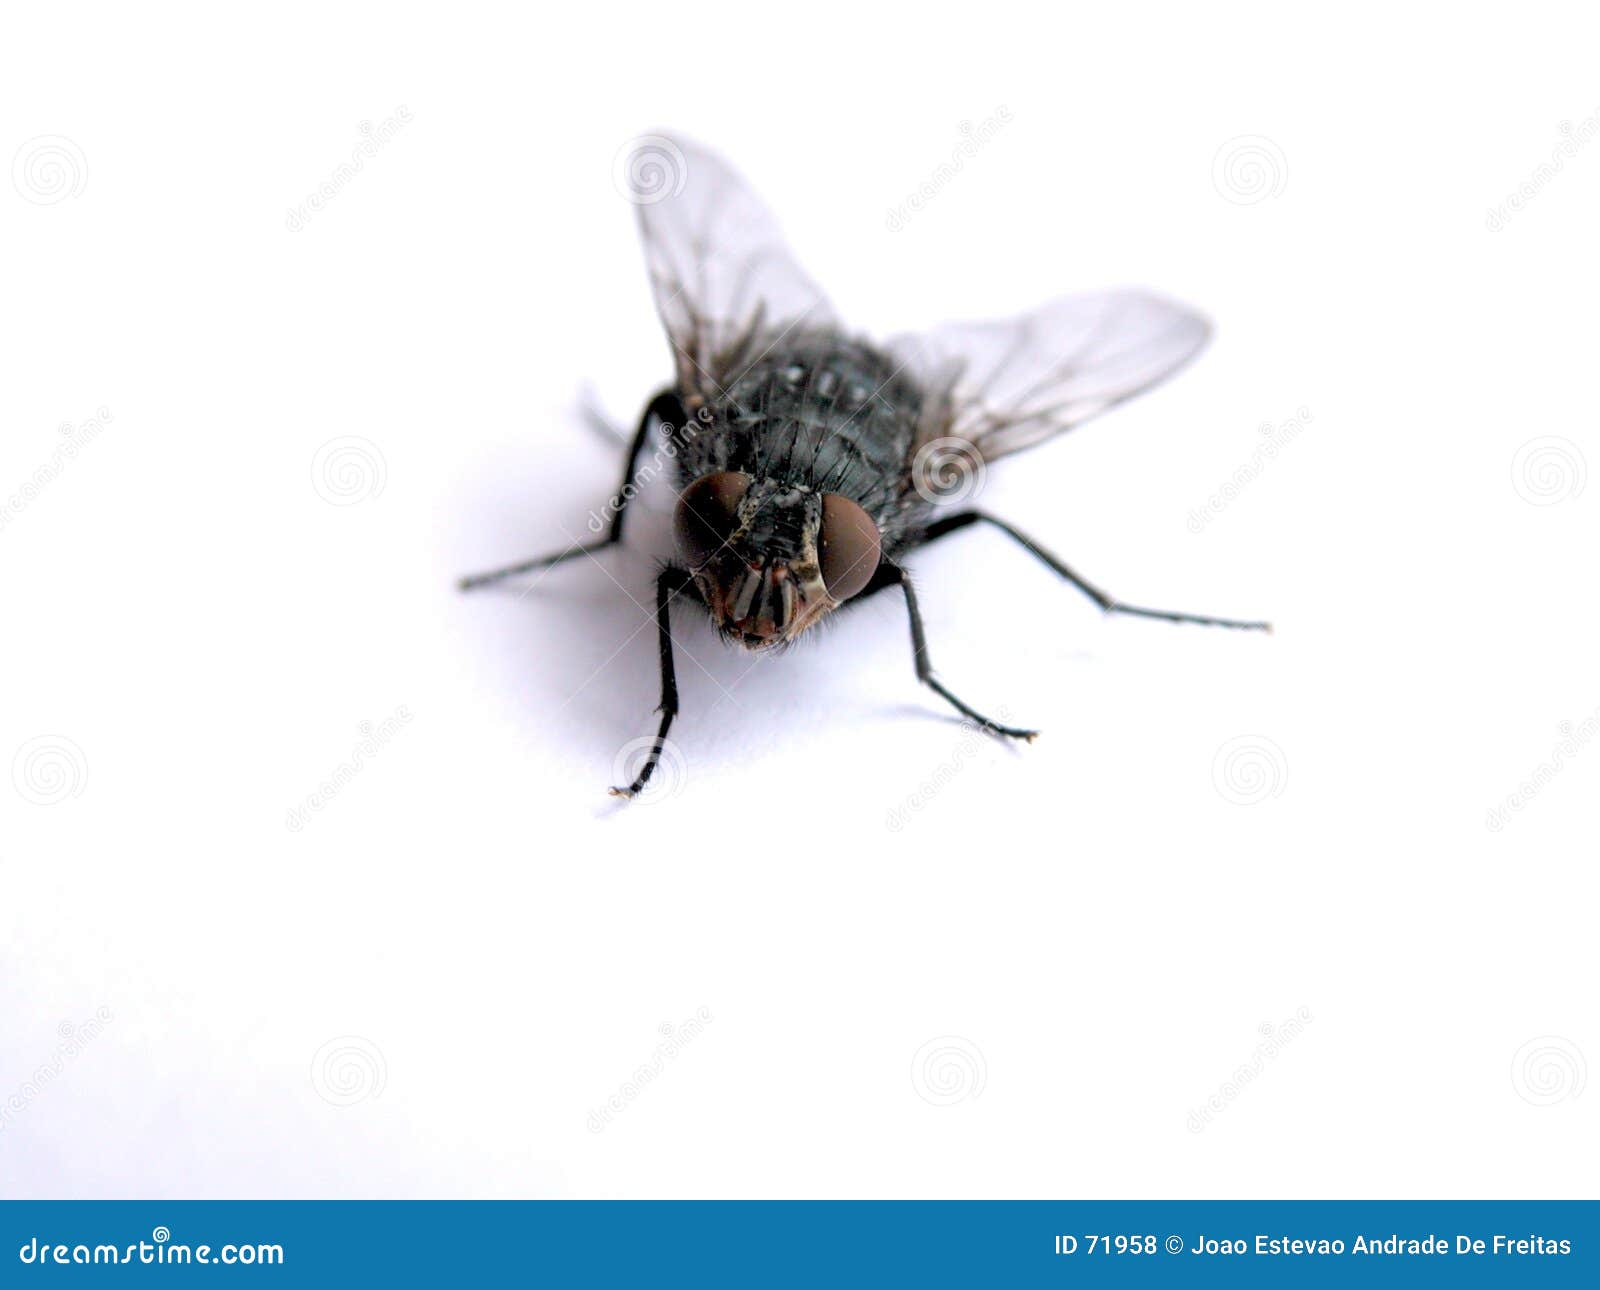 longlegged fly - Dolichopus reflectus - BugGuide.Net